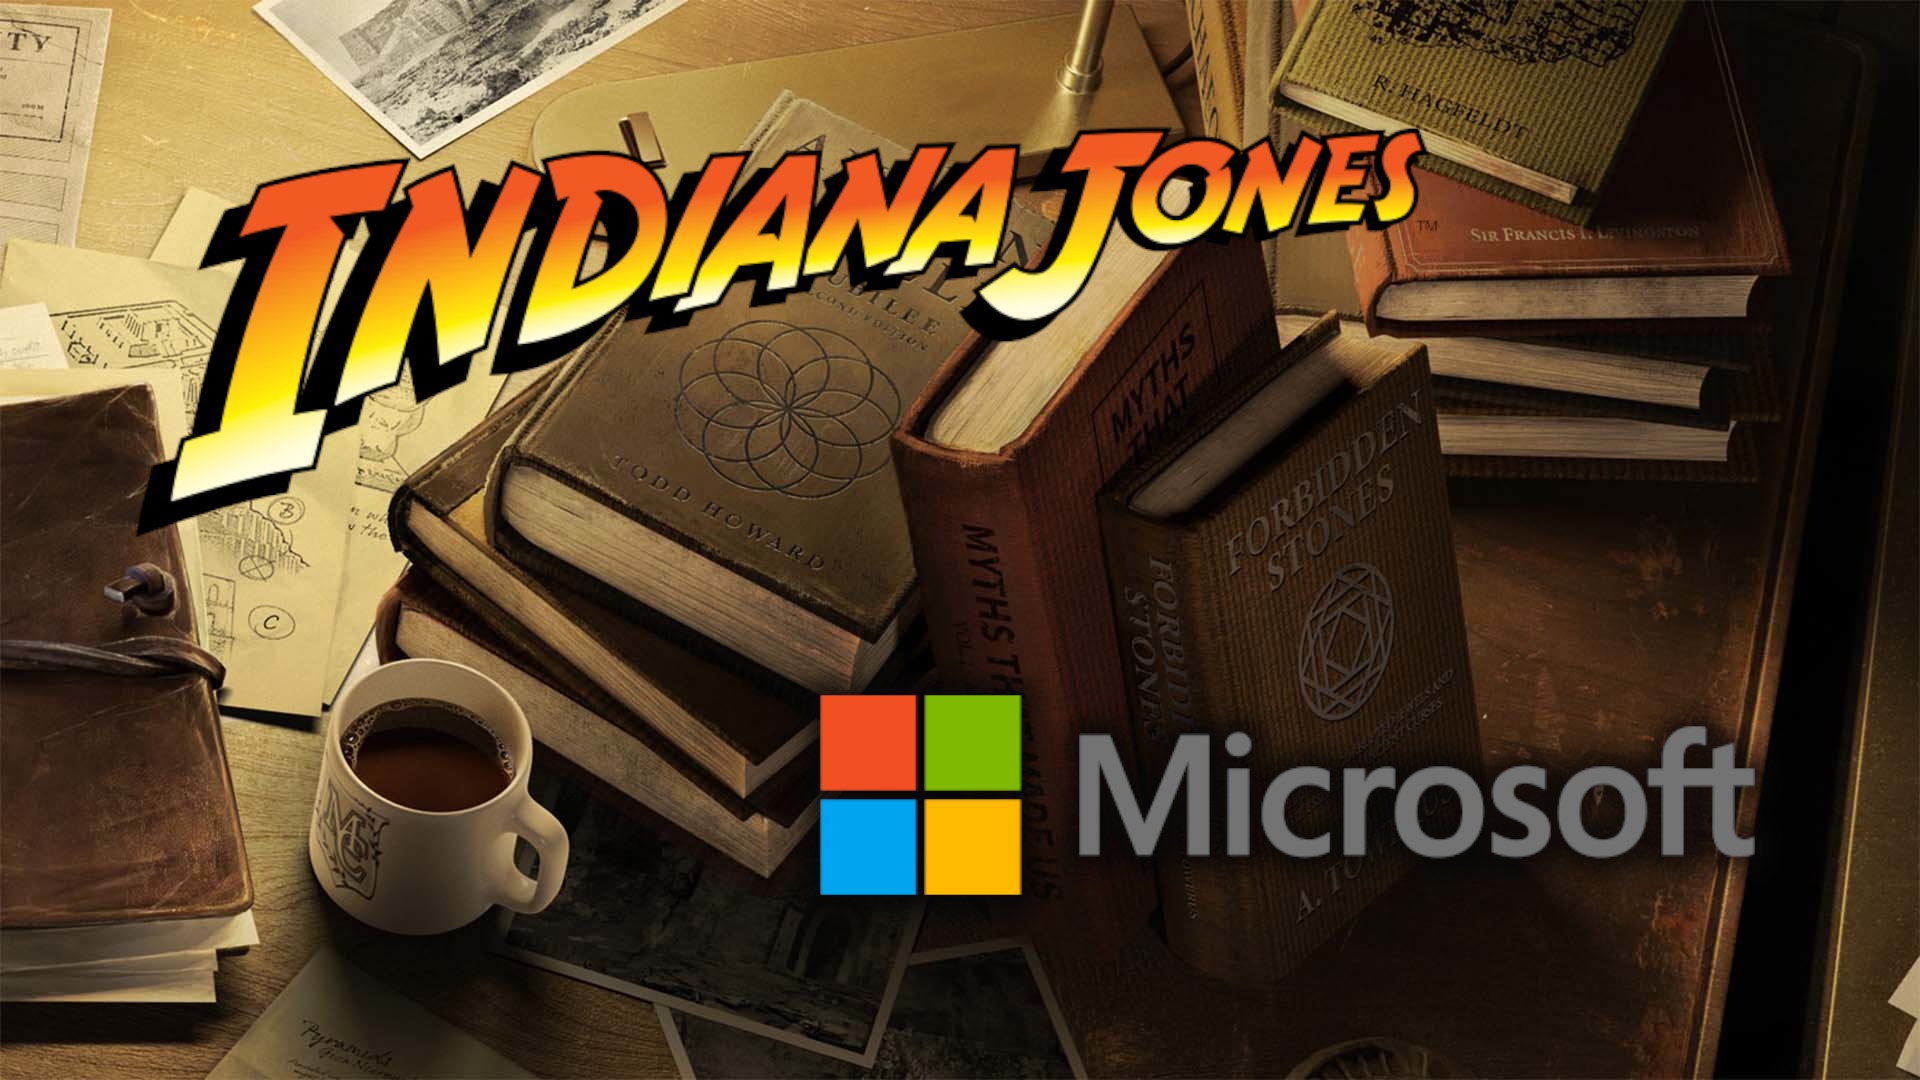 #Indiana Jones: Das kommende Spiel erscheint exklusiv für Xbox und PC, ist ab Release im Game Pass